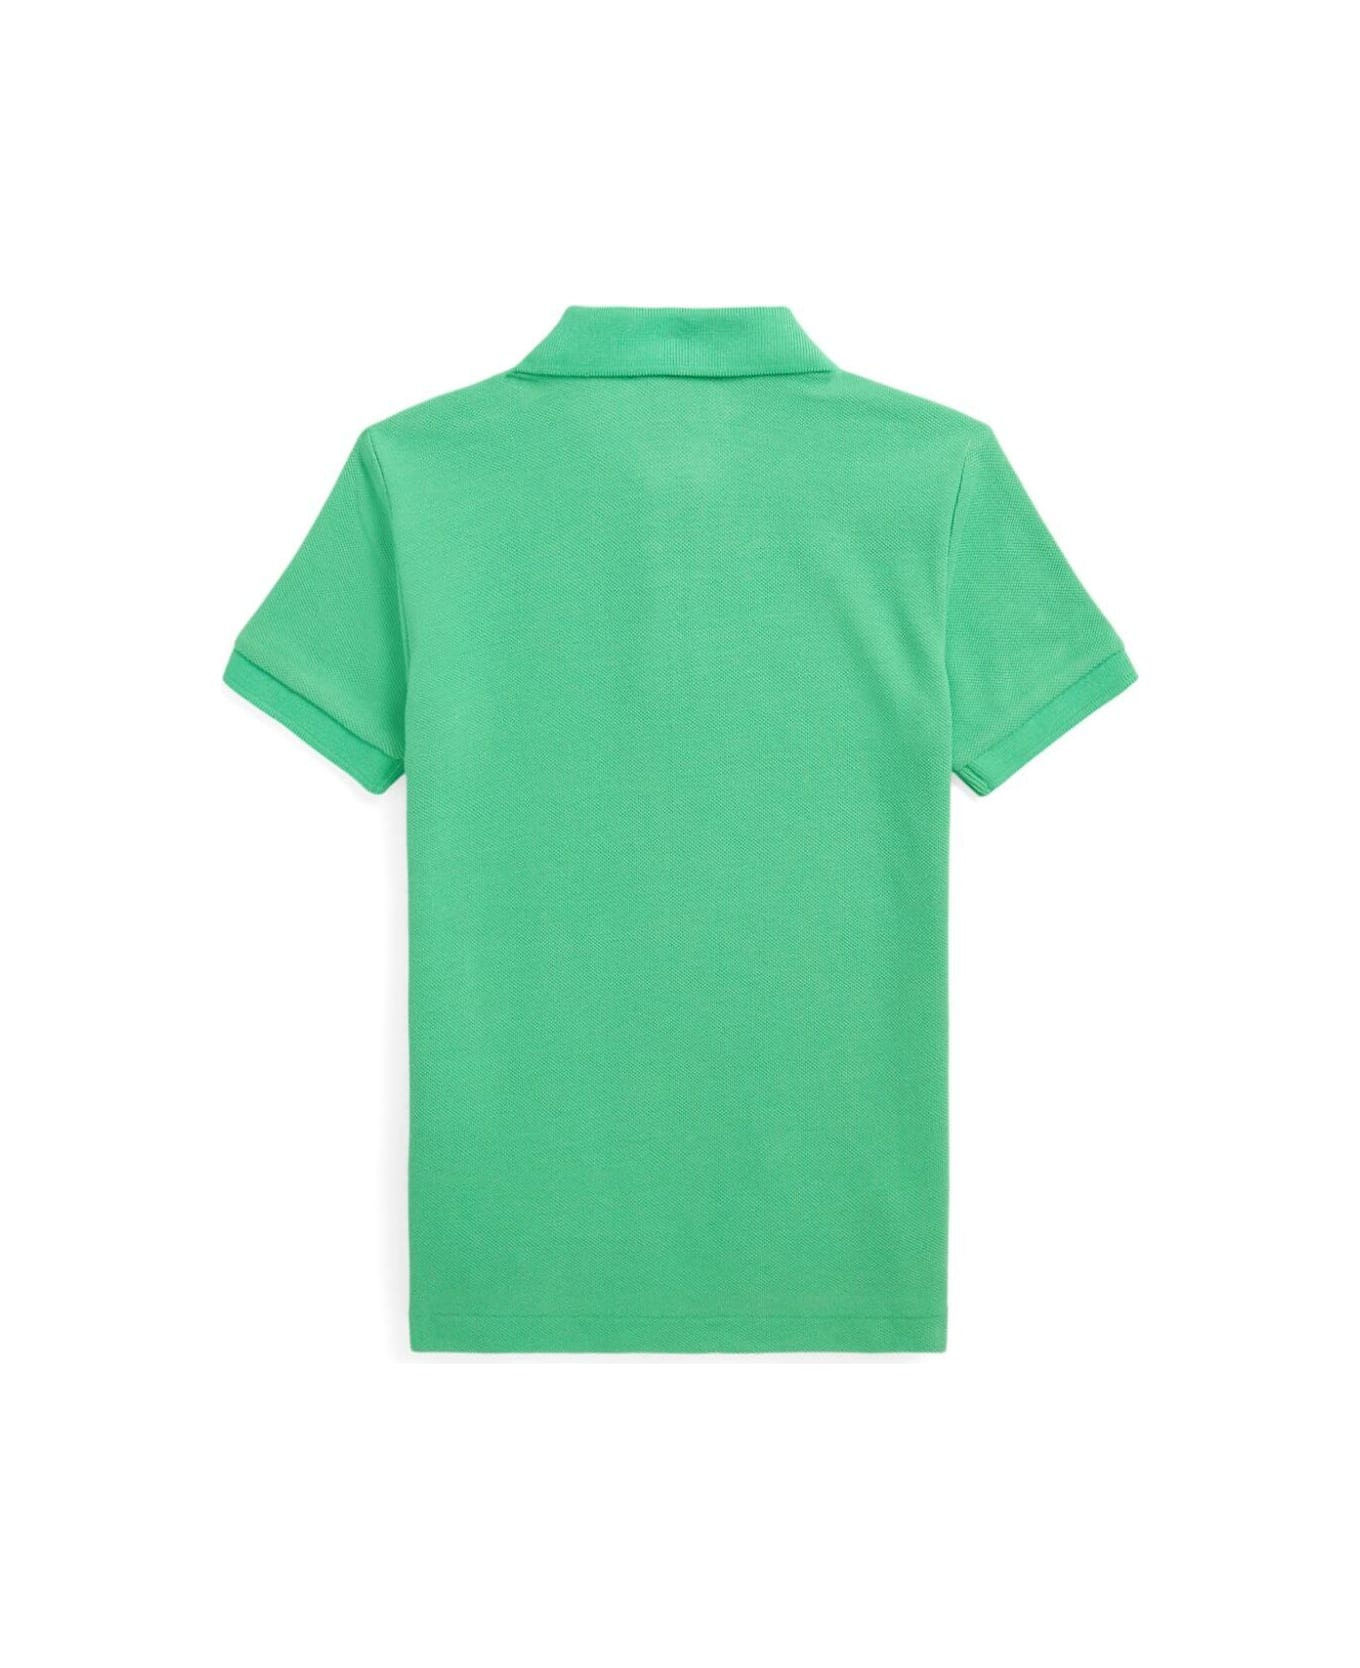 Polo Ralph Lauren Green Polo Shirt With Logo In Cotton Boy - Green